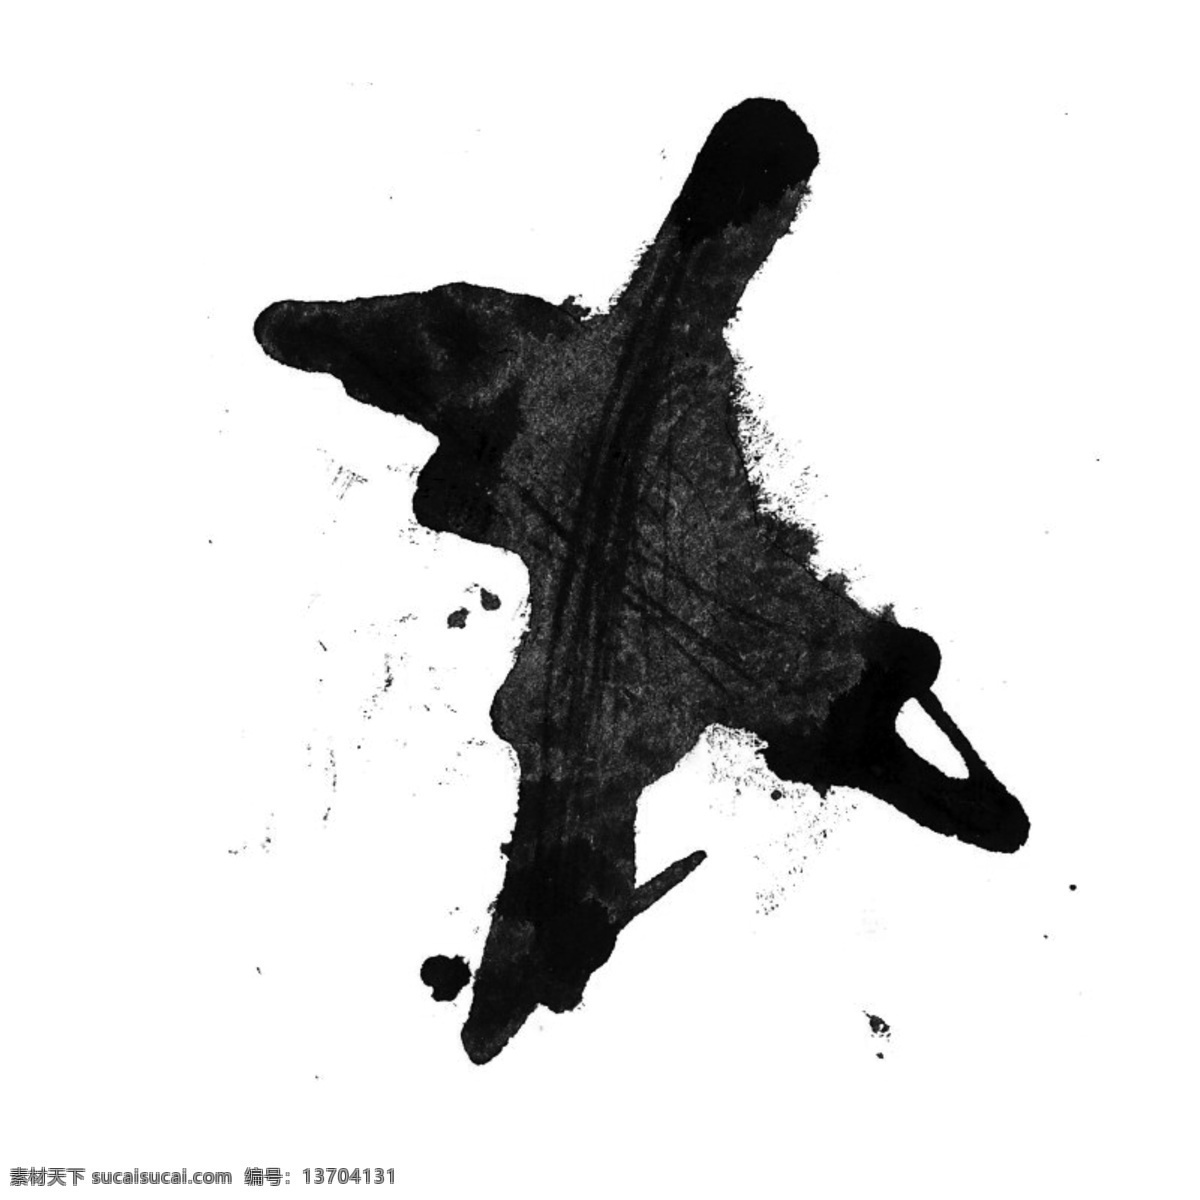 水彩 黑色 飞机 泼墨 墨水 卡通 手绘 创意 水墨 不规则 新意 漂浮 个性 抽象 挥洒 中国风